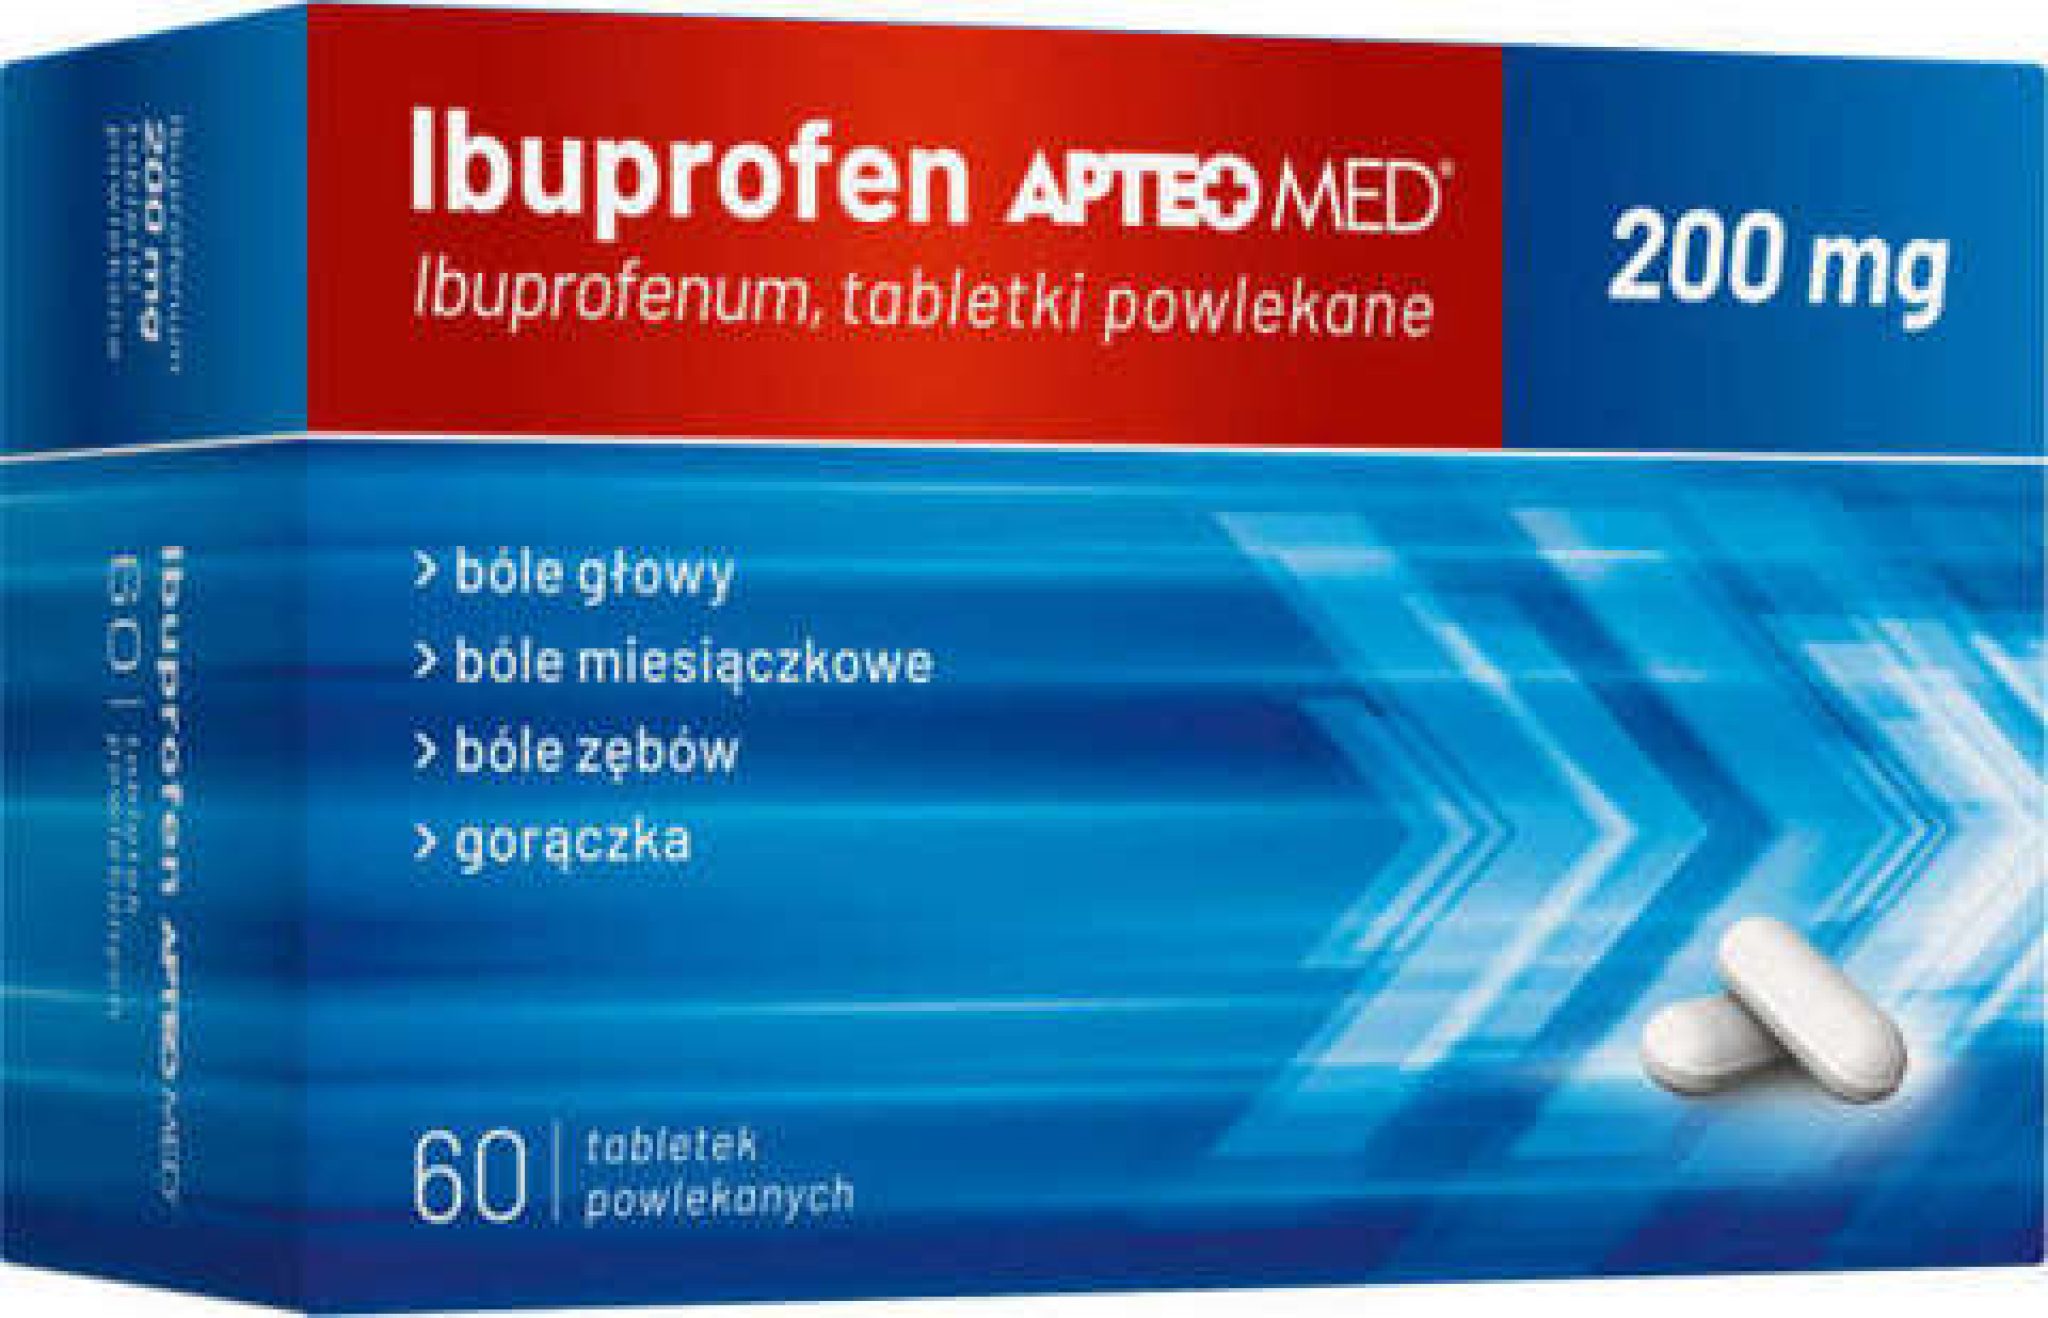 Para que sirve el ibuprofen 200 mg